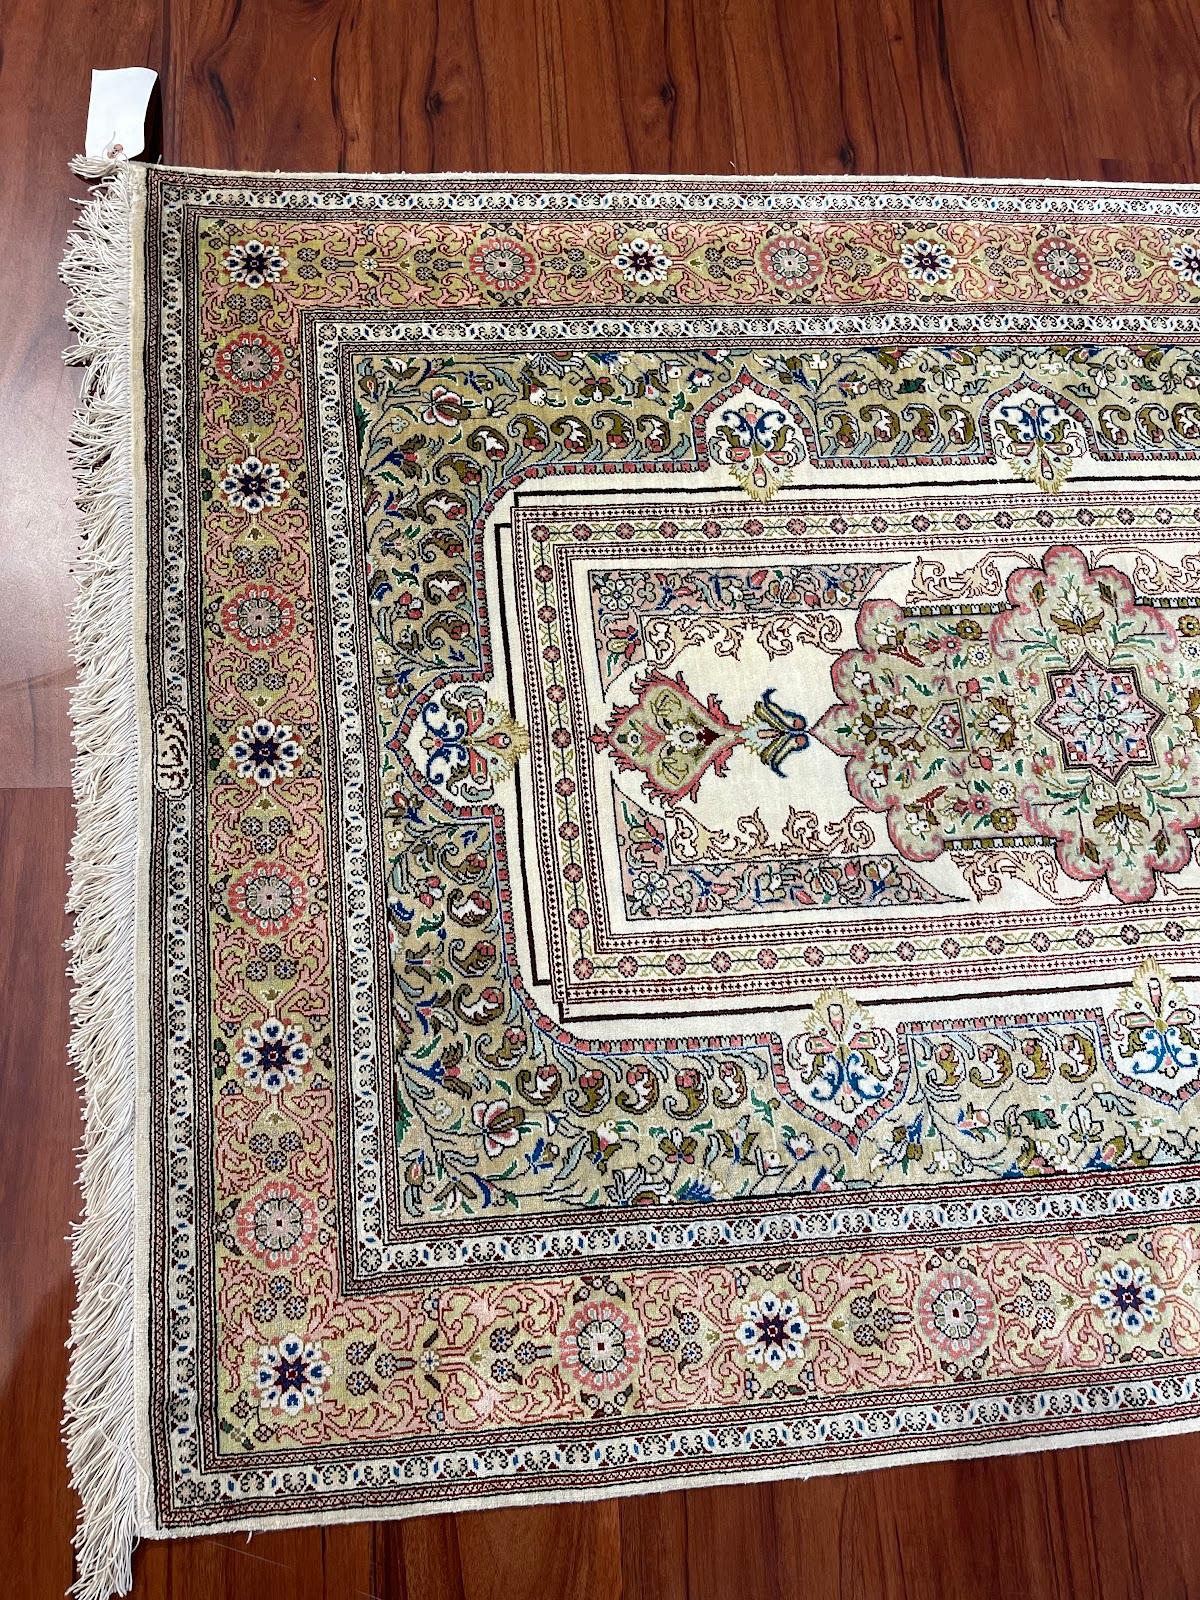 Il s'agit d'un tapis en soie perse Qum originaire d'Iran. Le matériau est 100% soie. Les dimensions sont de 3'0 